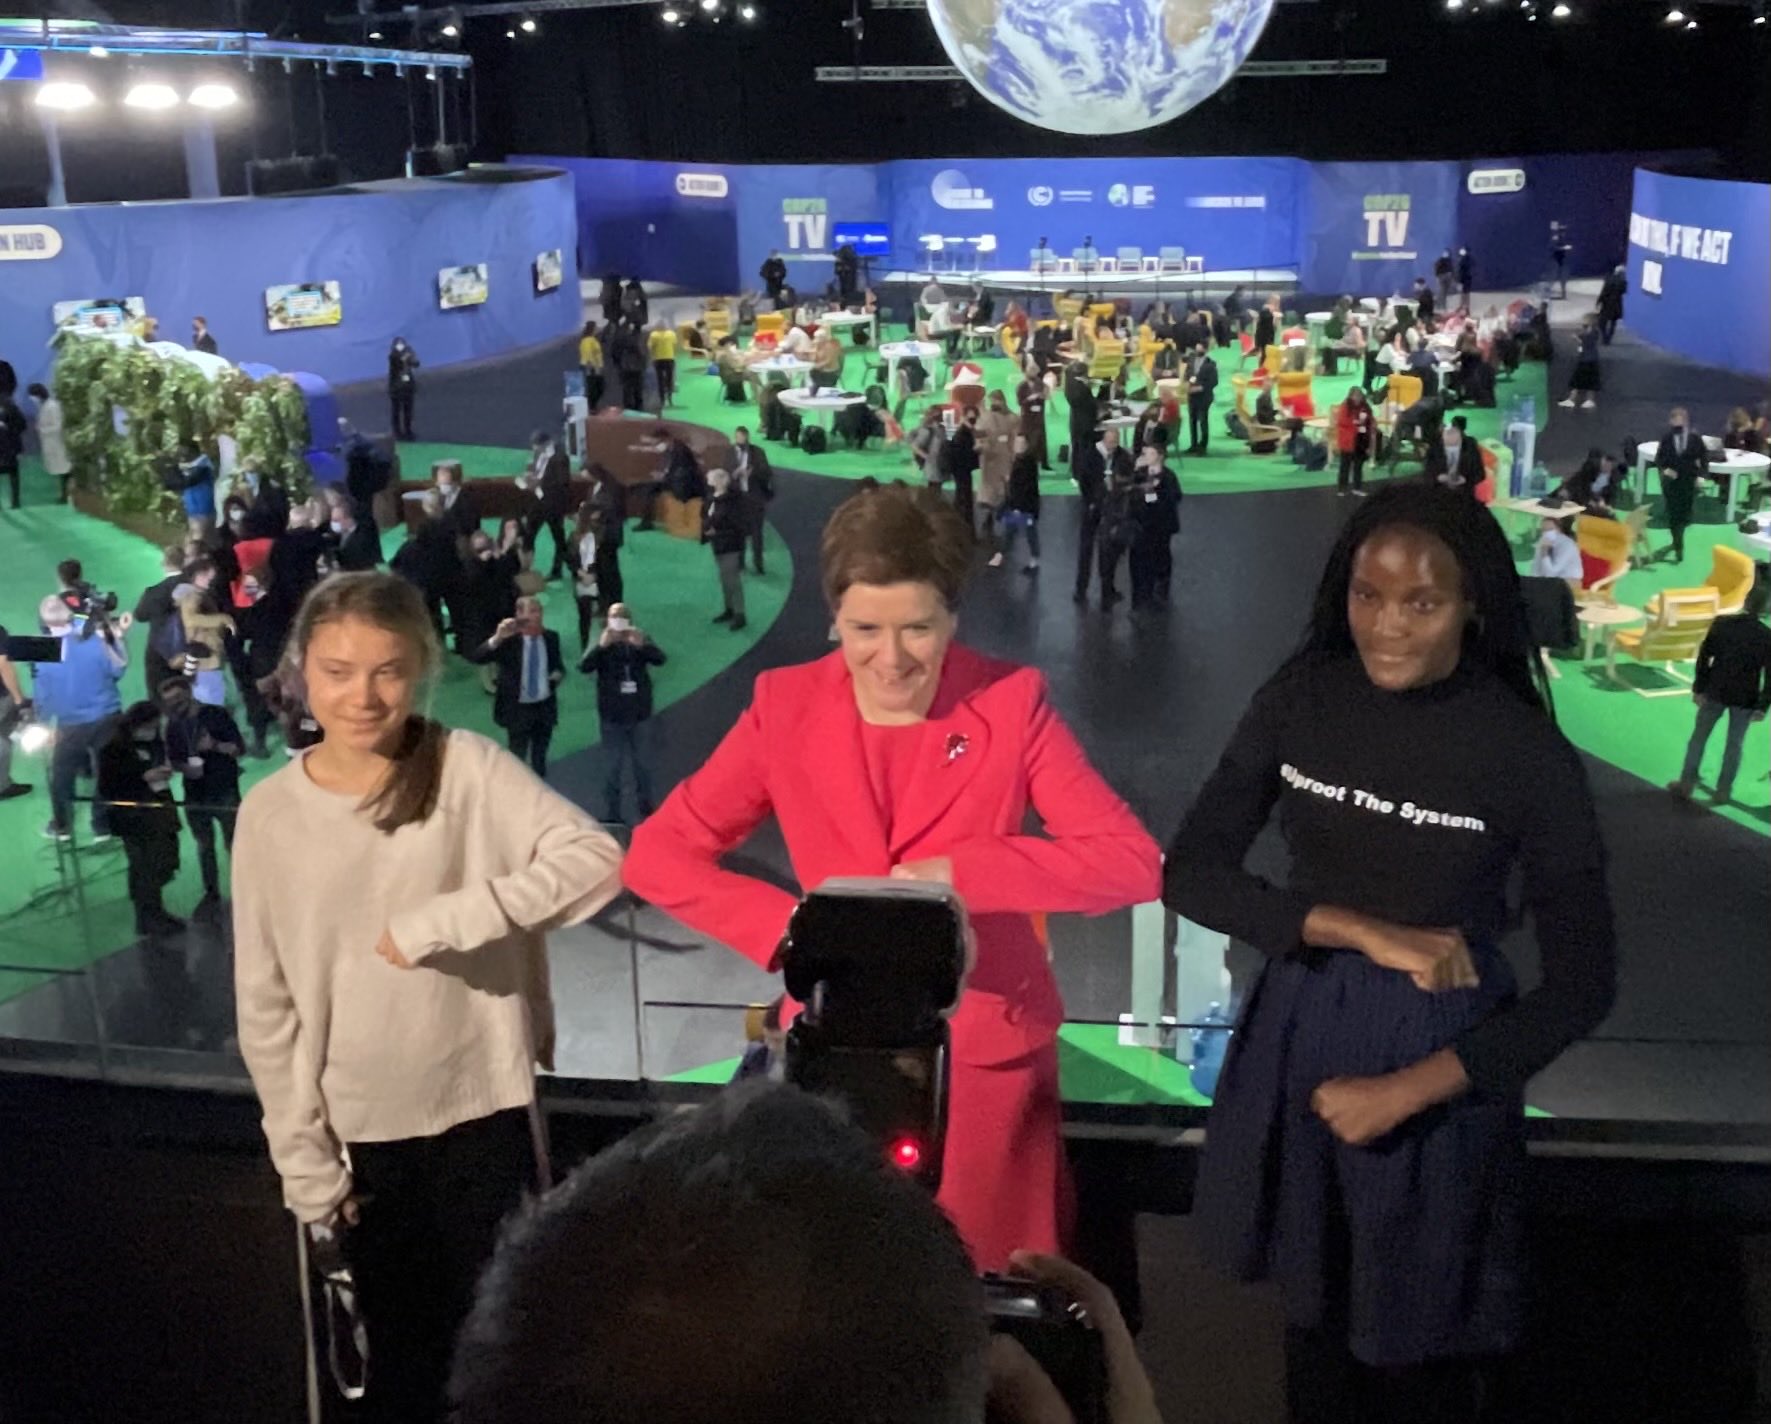 La primera ministra d'Escòcia a la cimera climàtica amb Thungberg